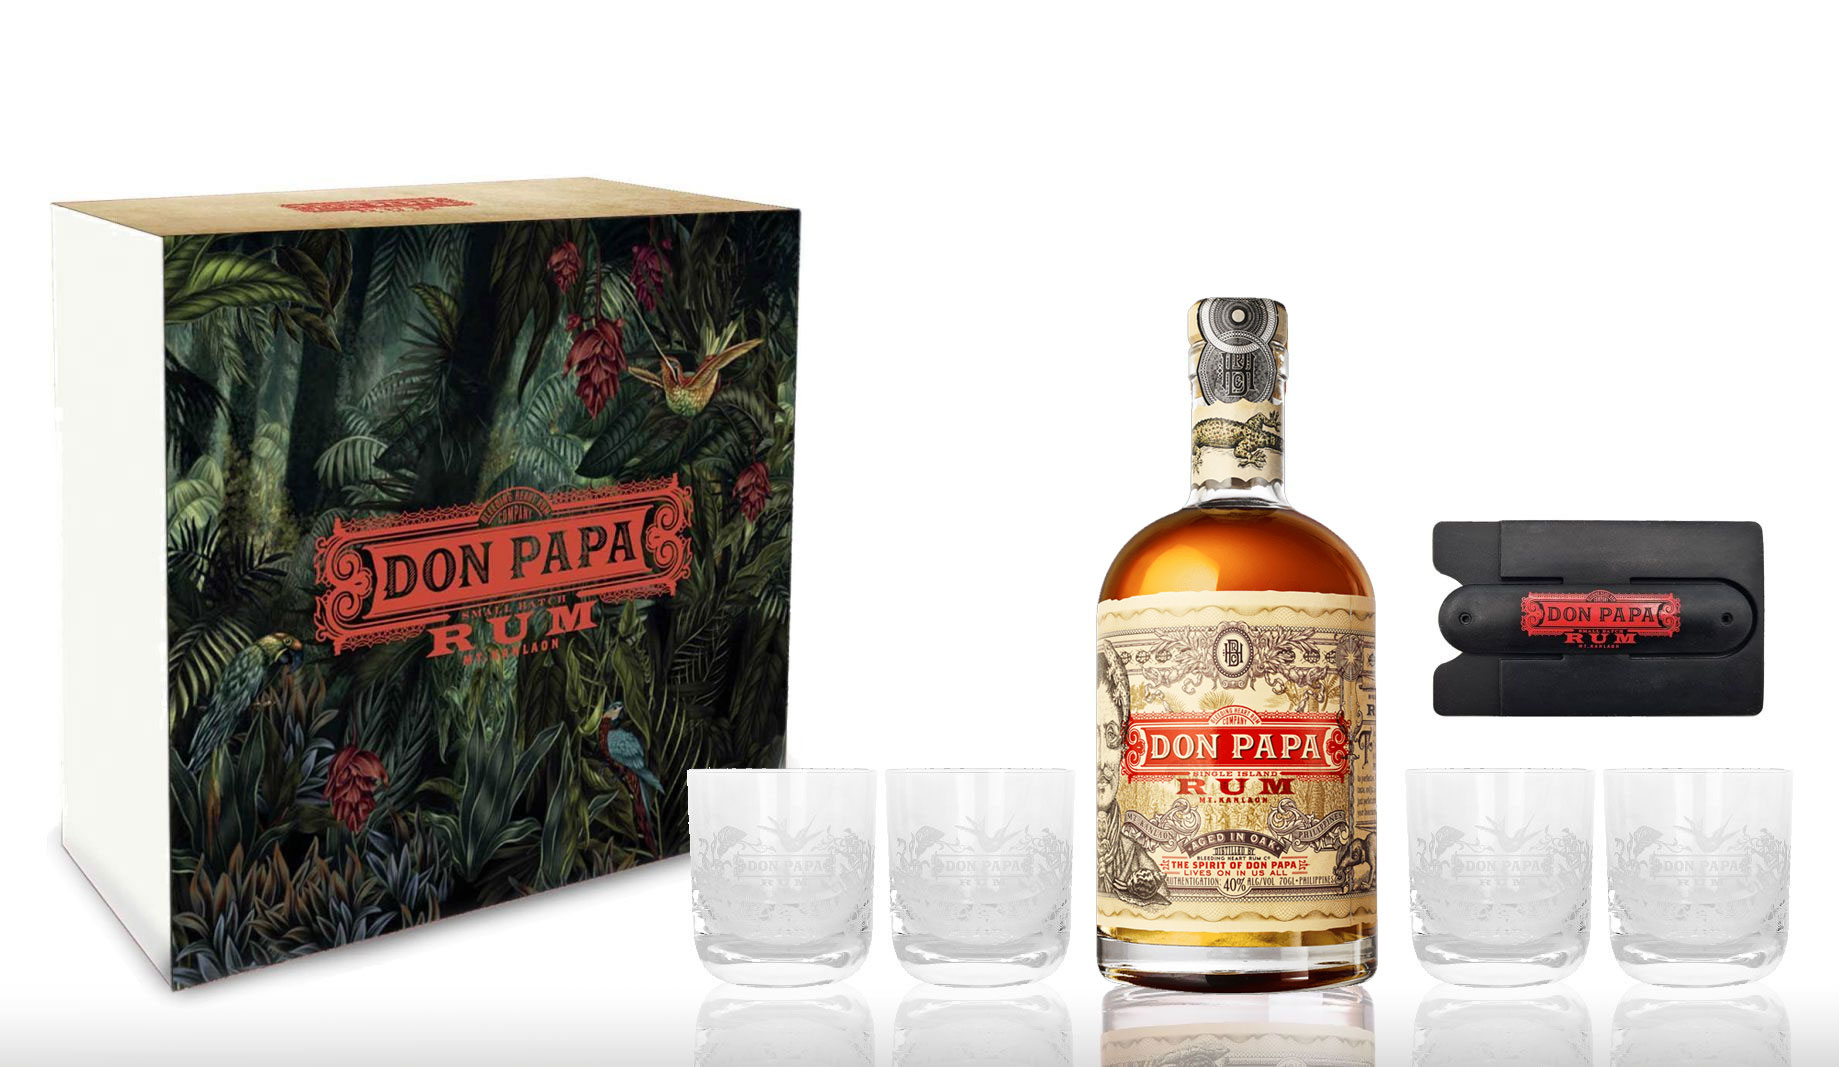 Don Papa Rum 7 Jahre 0,7l (40% Vol) + 4 Tumbler mit Geschenkverpackung Glas Gläser + Handy Karten Halterung zum aufkleben - [Enthält Sulfite]